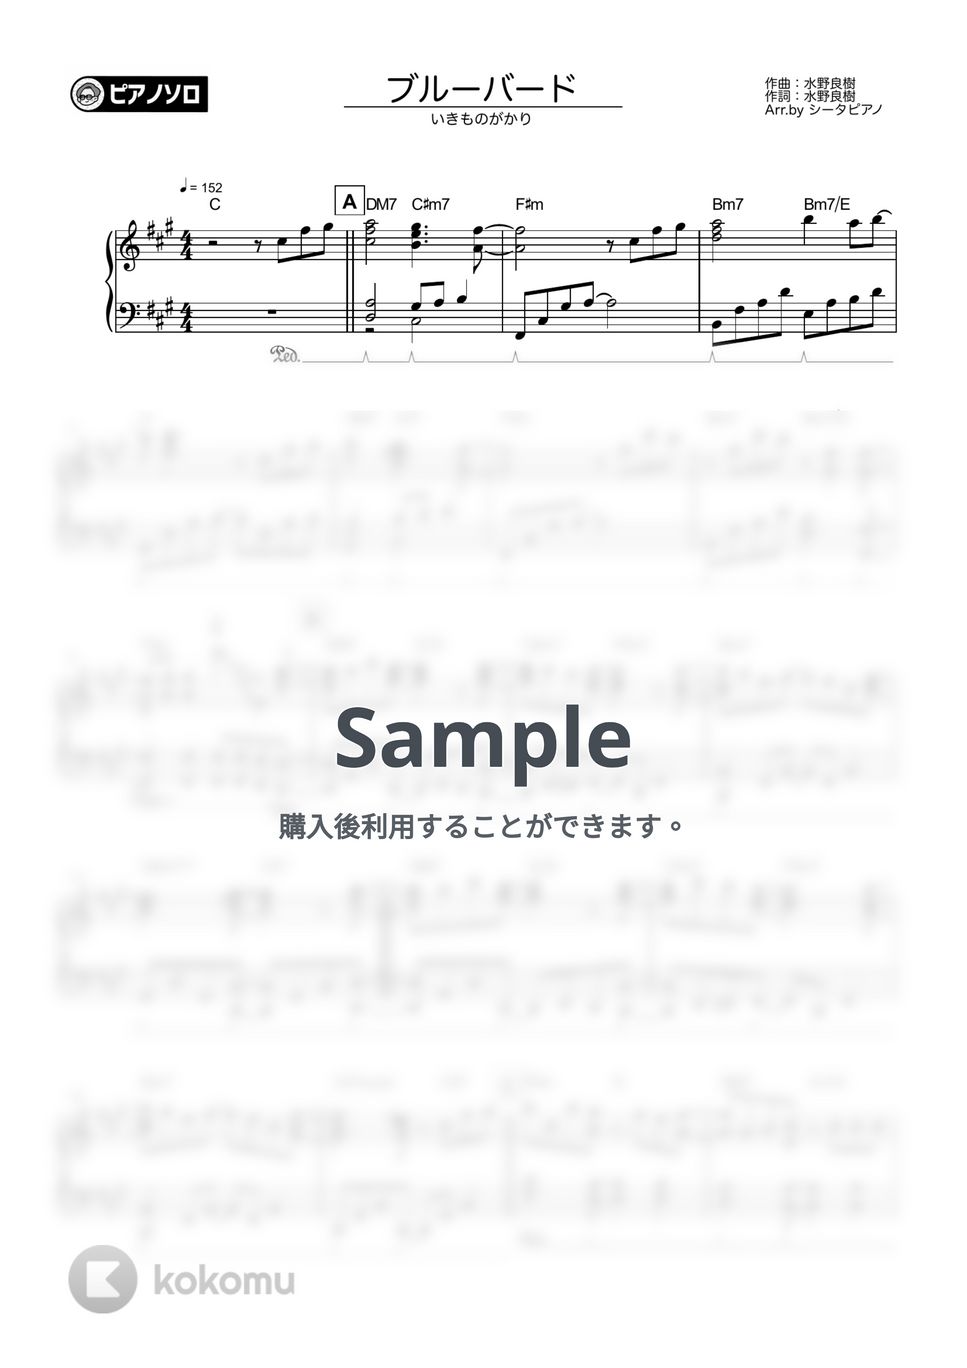 いきものがかり - ブルーバード by シータピアノ